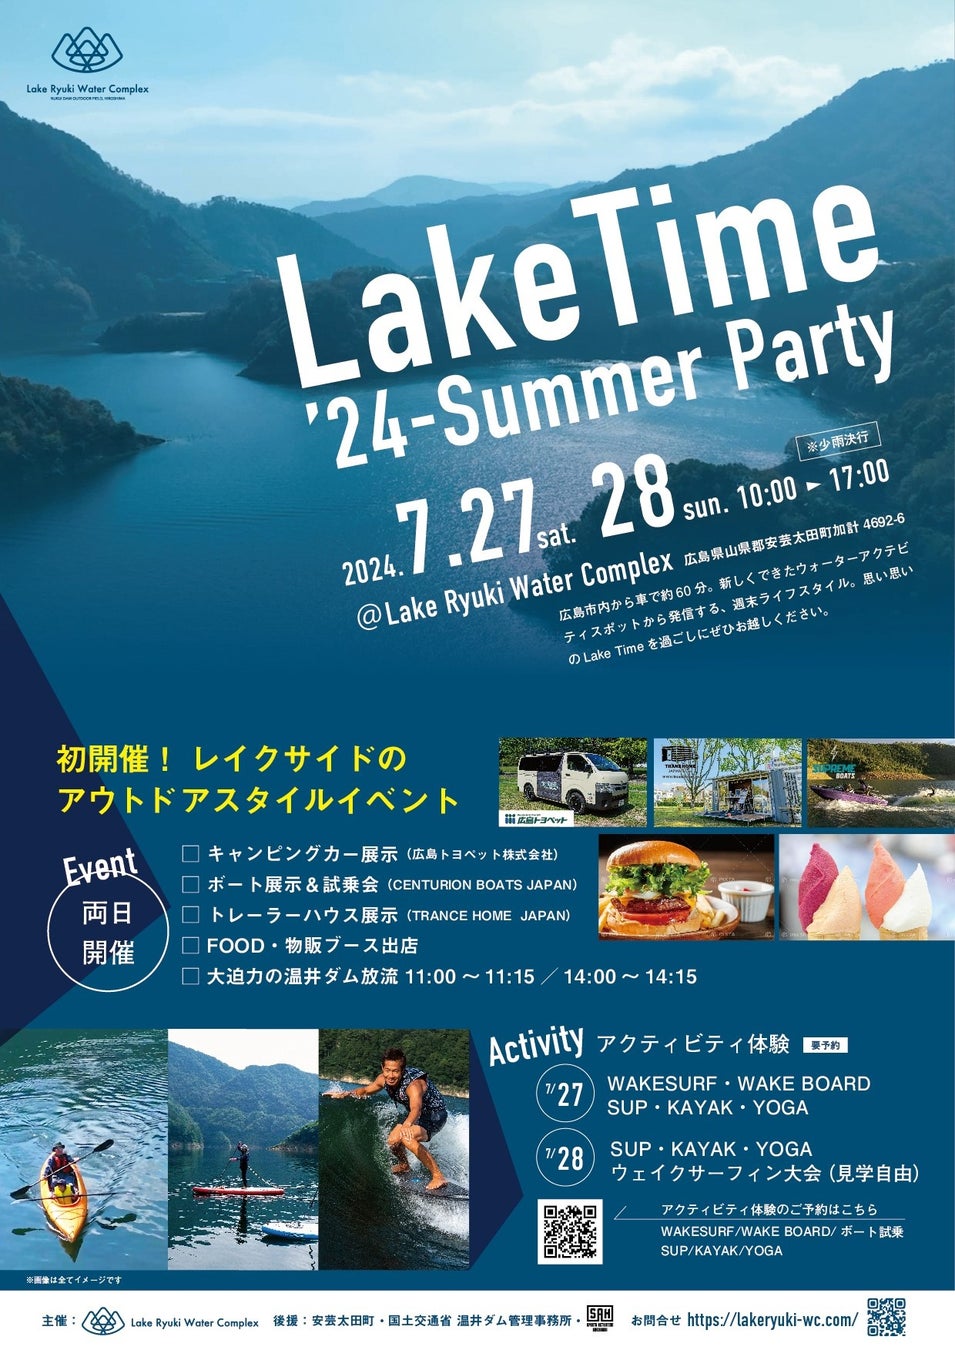 初開催！ 西日本最大級の高さを誇るアーチ式ダムの温井ダム“龍姫湖”で、レイクサイドのアウトドアスタイルイベント開催‼